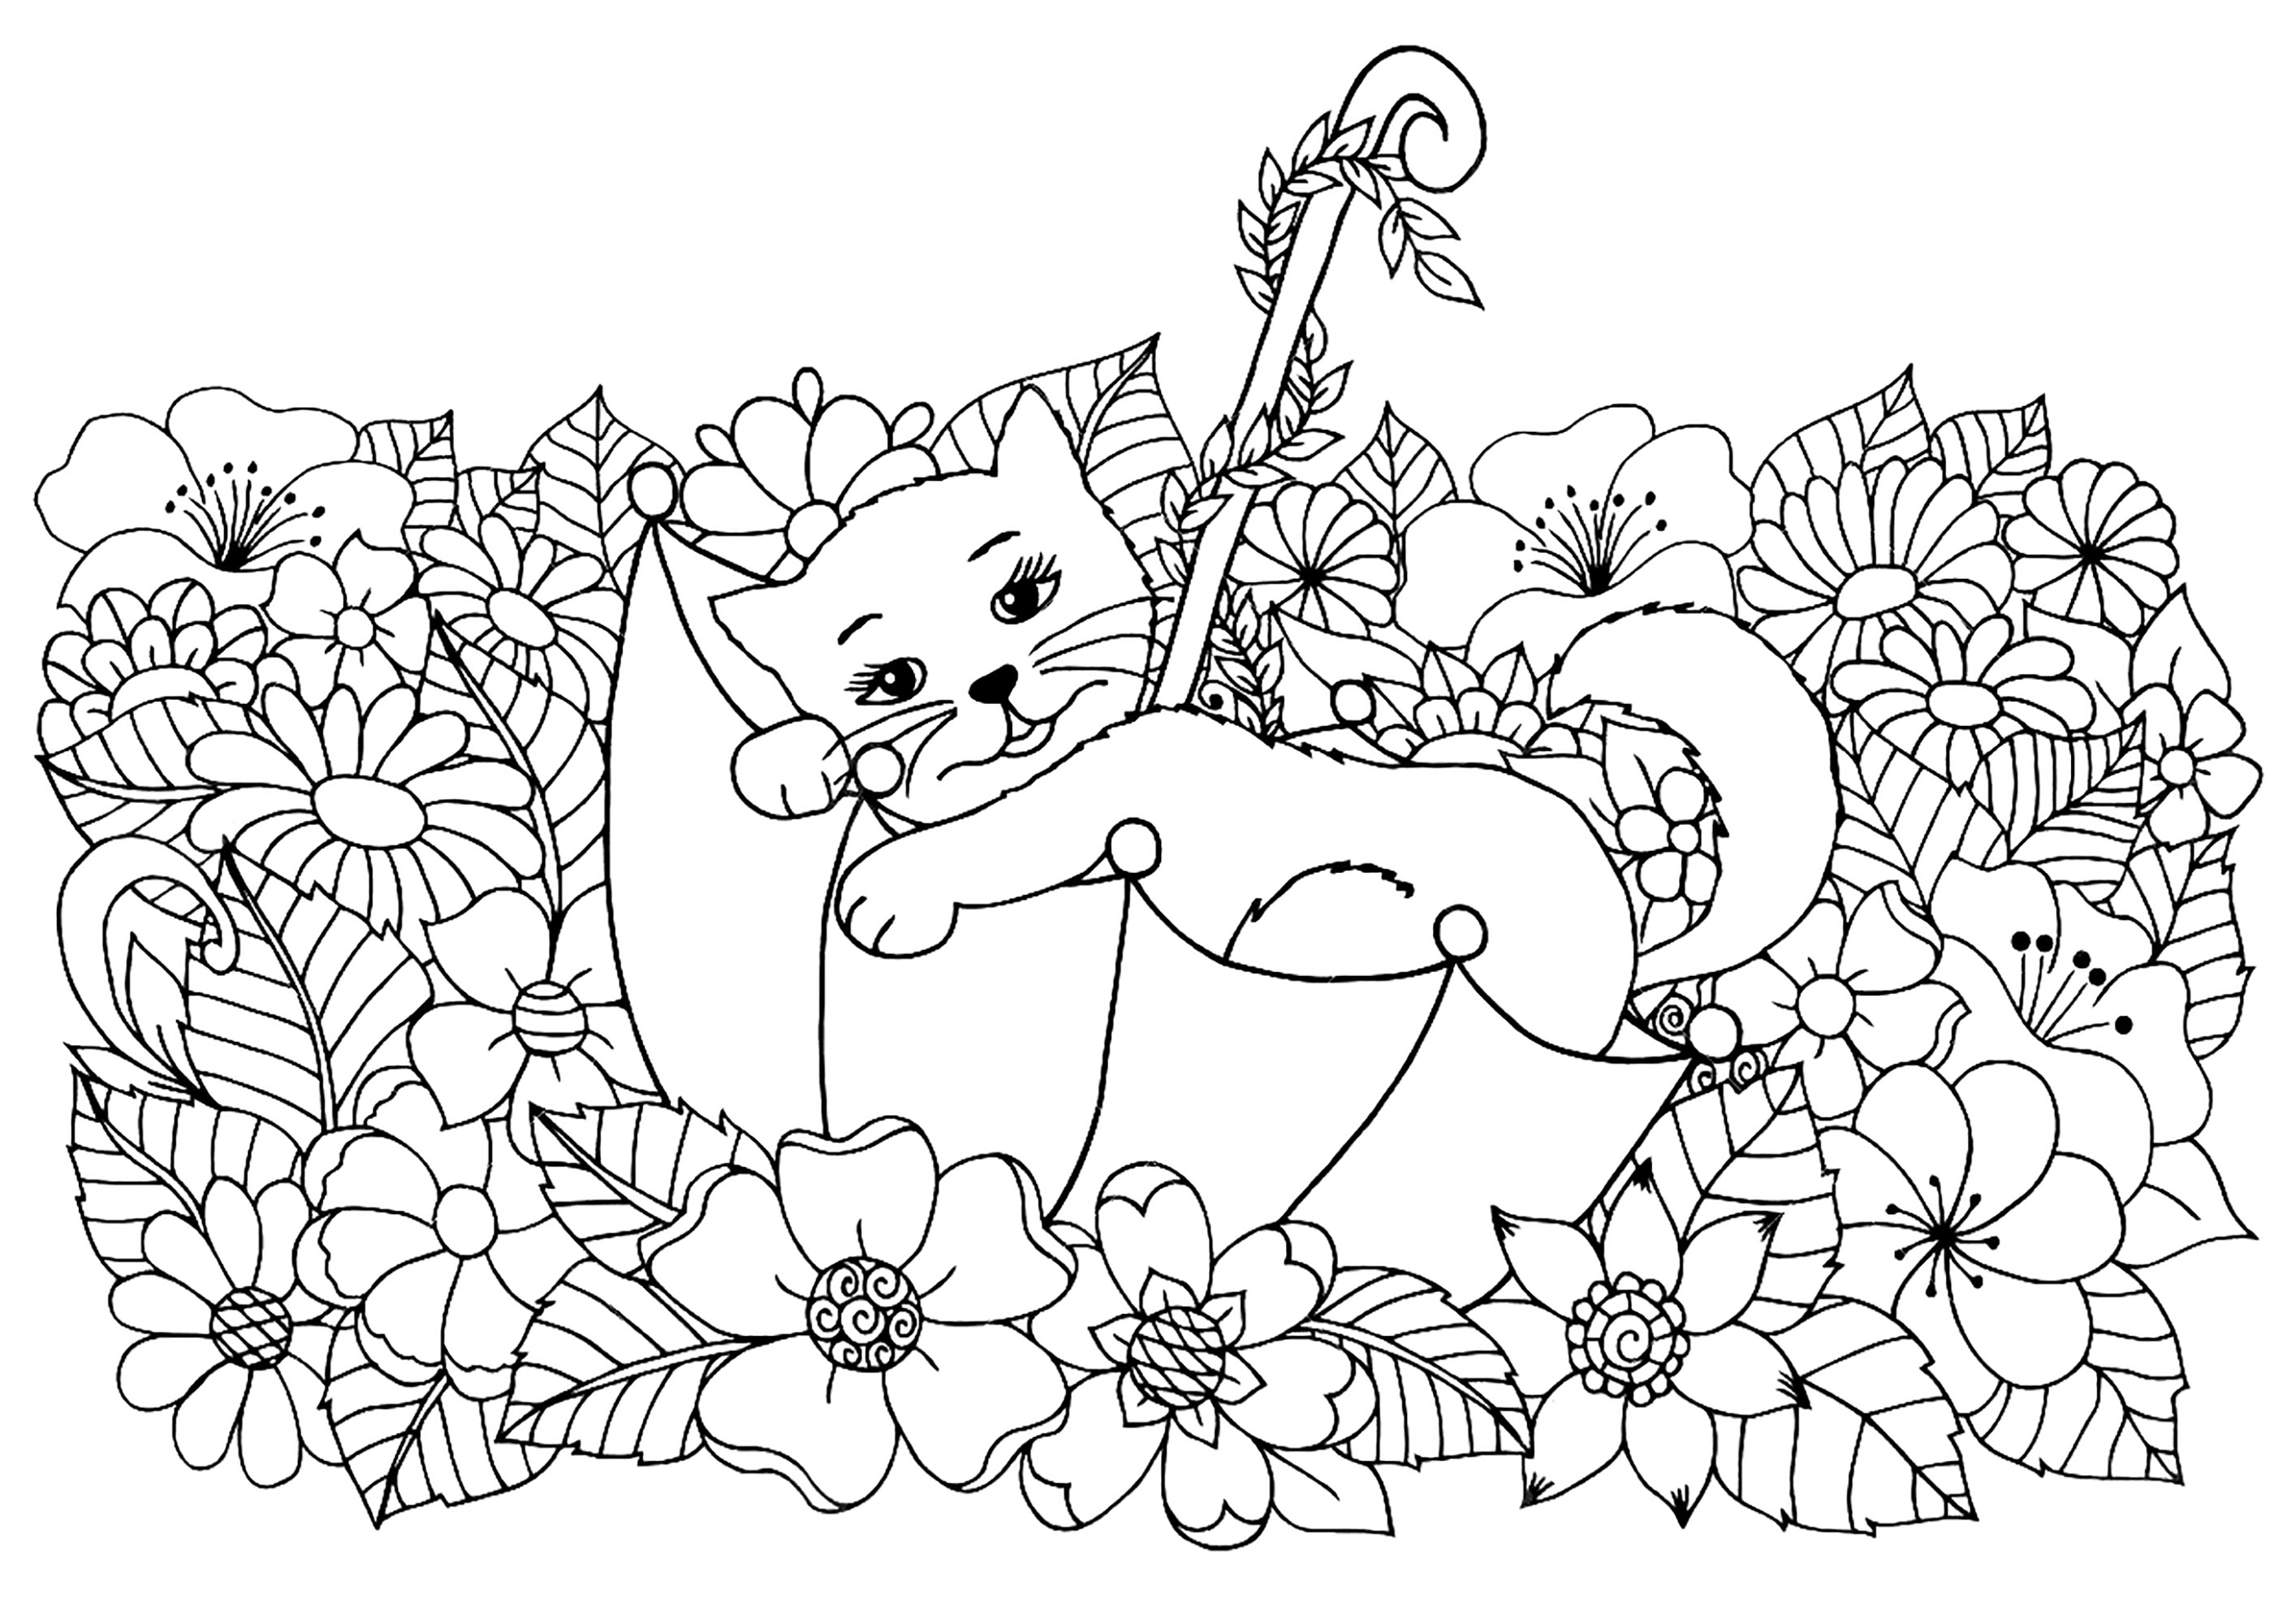 Gattino carino che riposa in un ombrello, circondato da bellissimi fiori